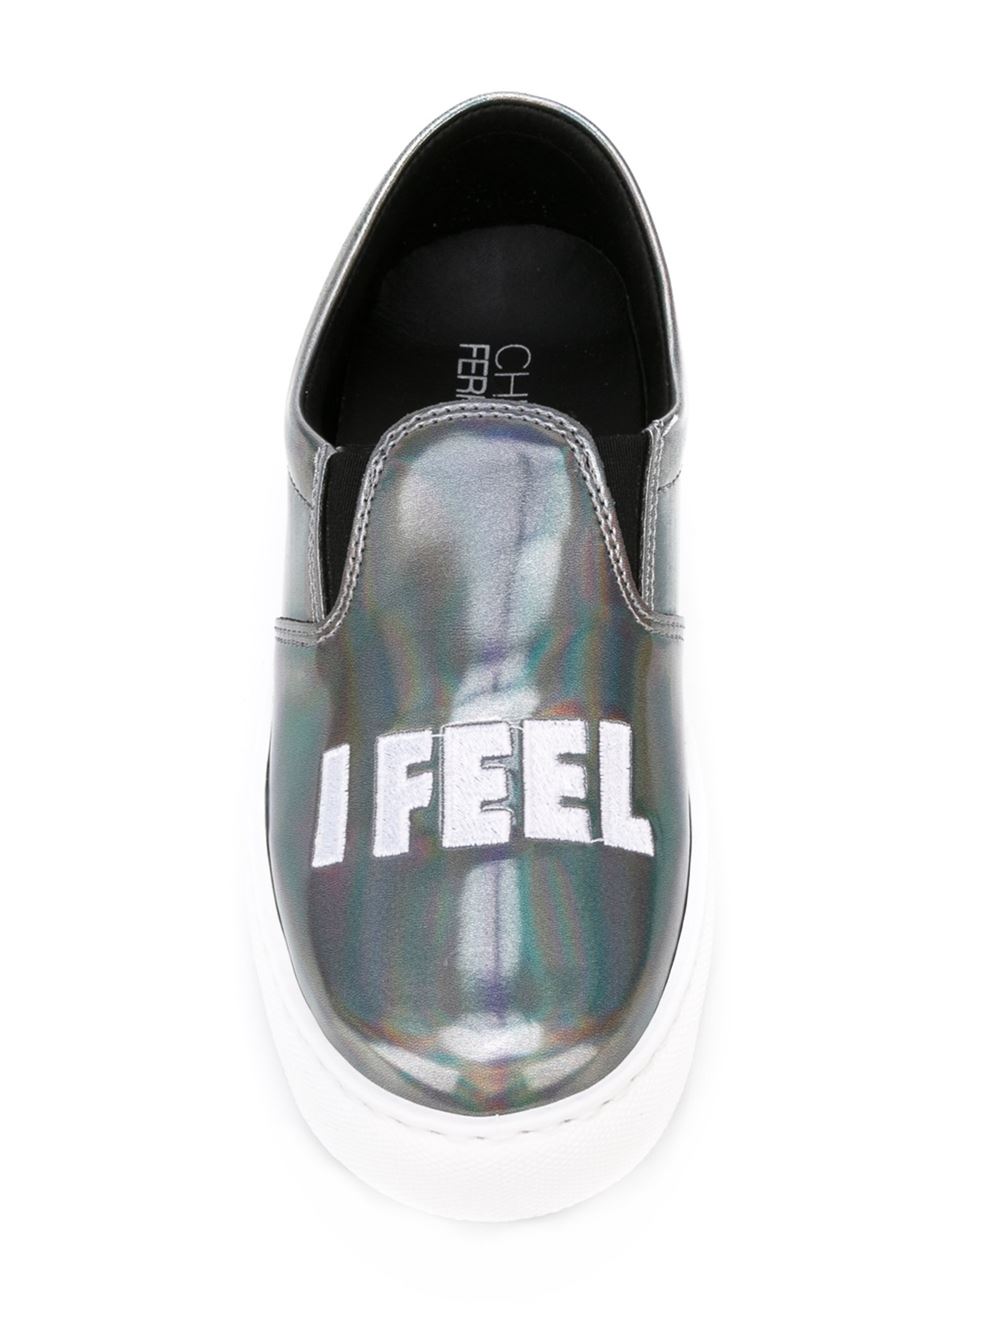 Chiara Ferragni Women's Plimsolls Grey Leather Slip-on Sneakers